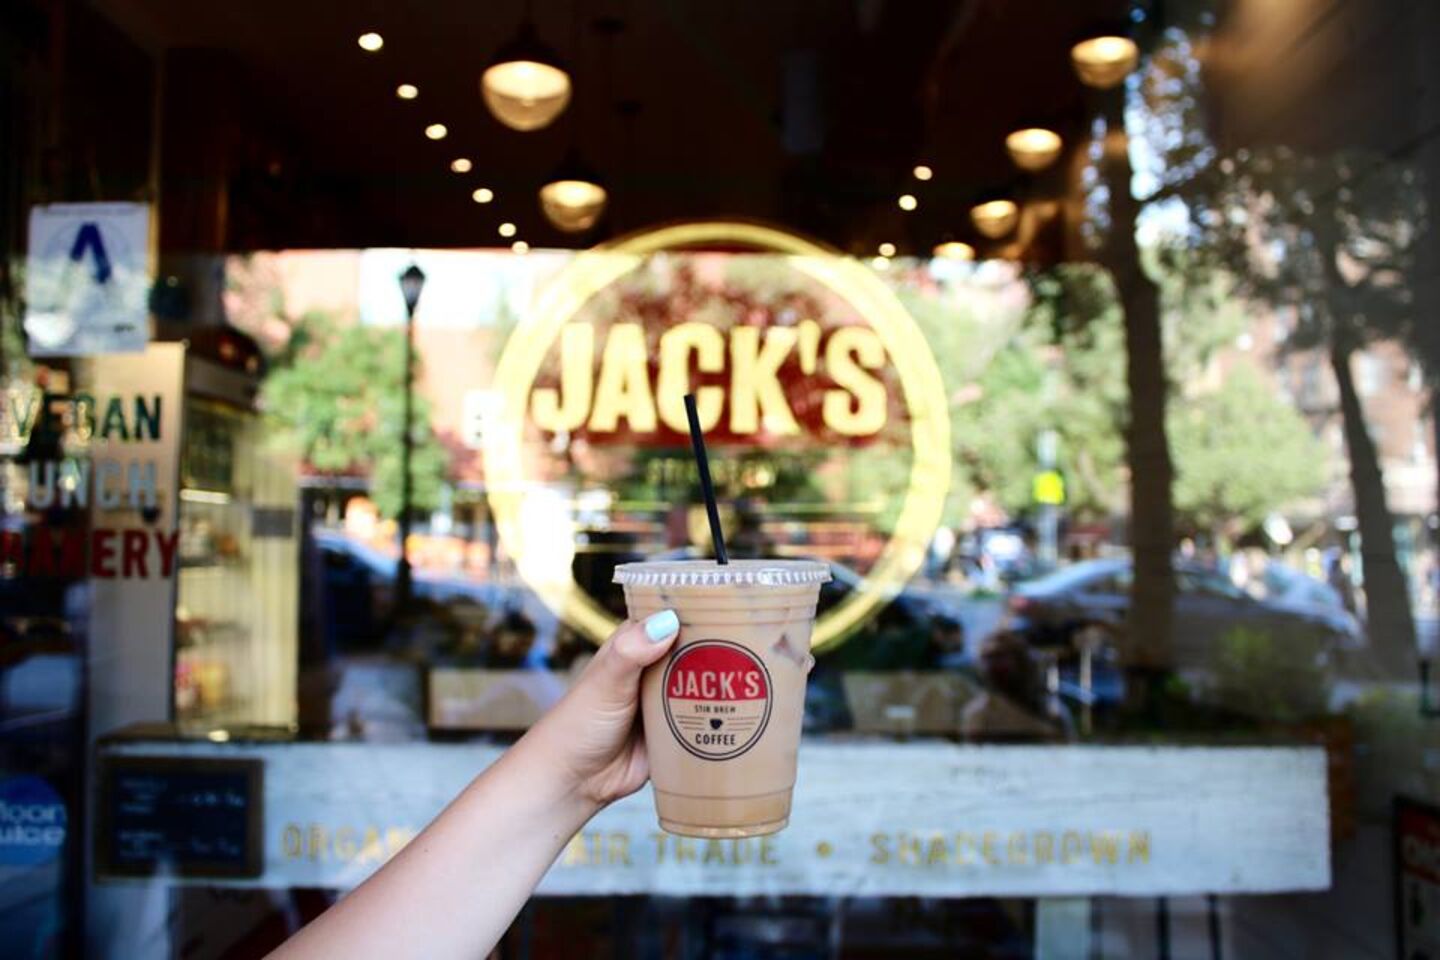 A photo of Jack's Stir Brew Coffee, Rag & Bone